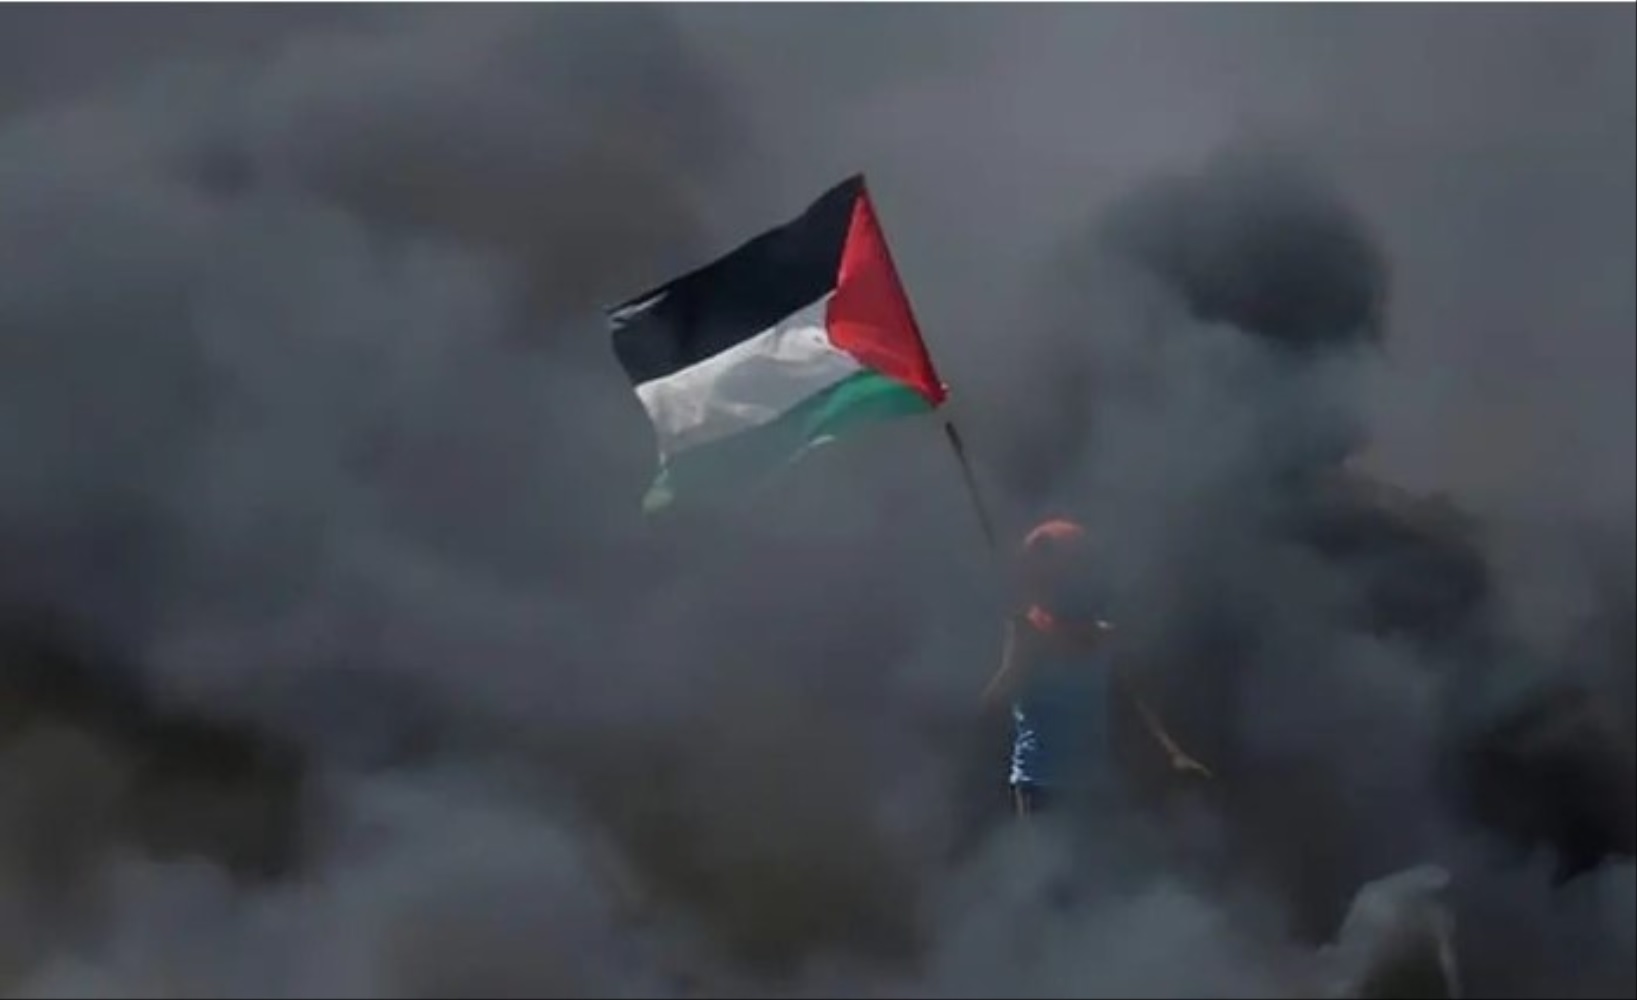 Kondisi Semakin Mencekam, Israel Ultimatum 1,1 juta Warga Kosongkan Gaza Utara